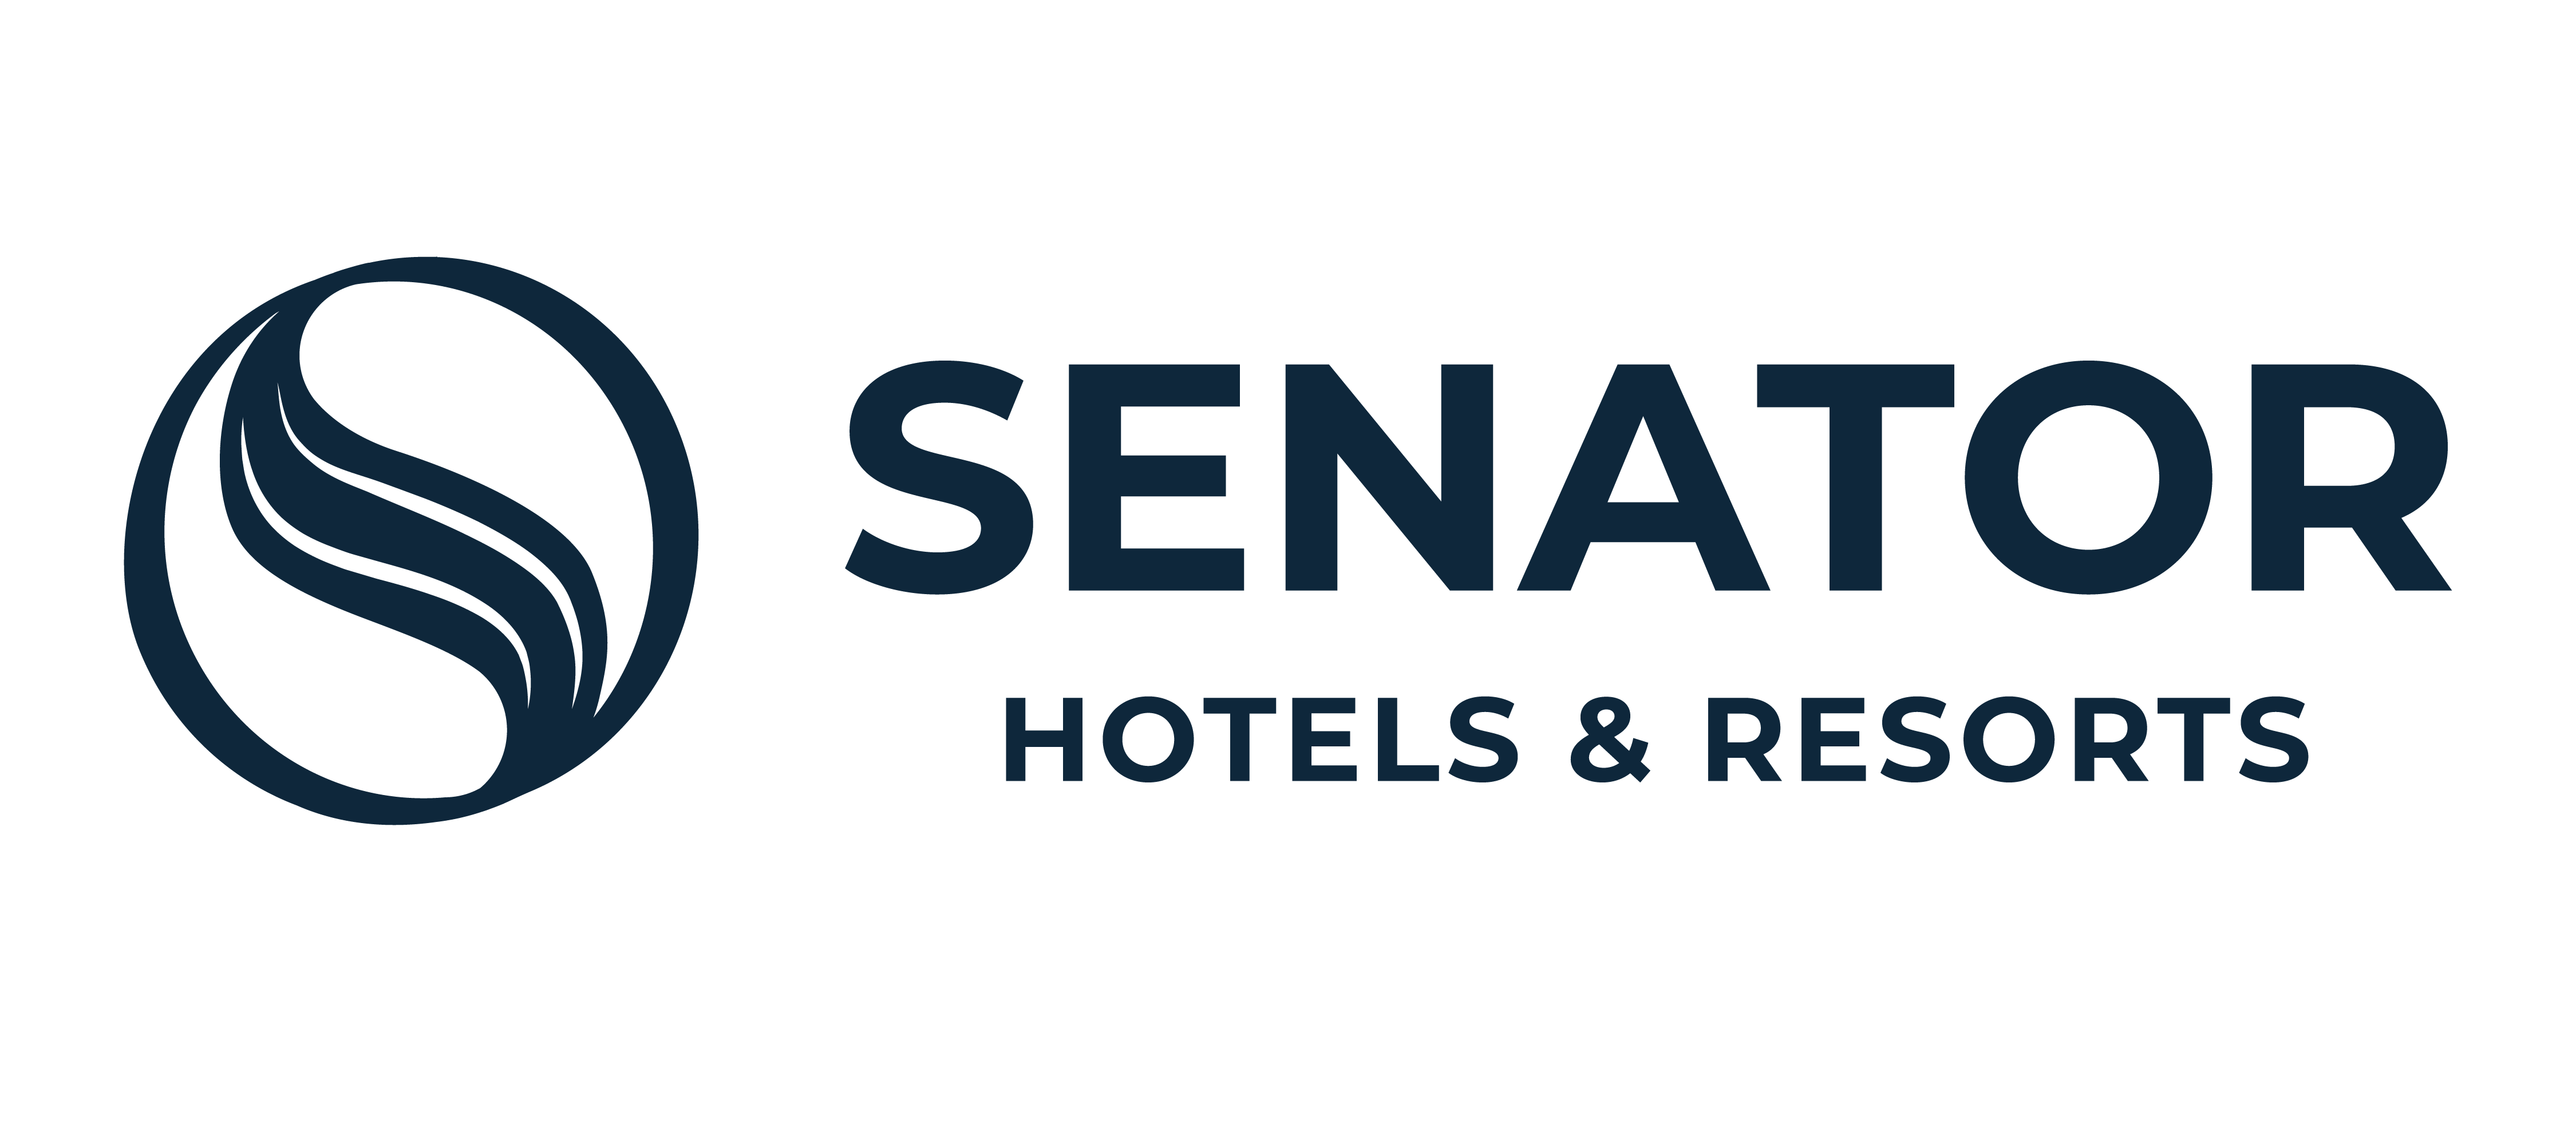 Blog de Hoteles Senator Hotels & Resorts, sobre viajes, playas y turismo